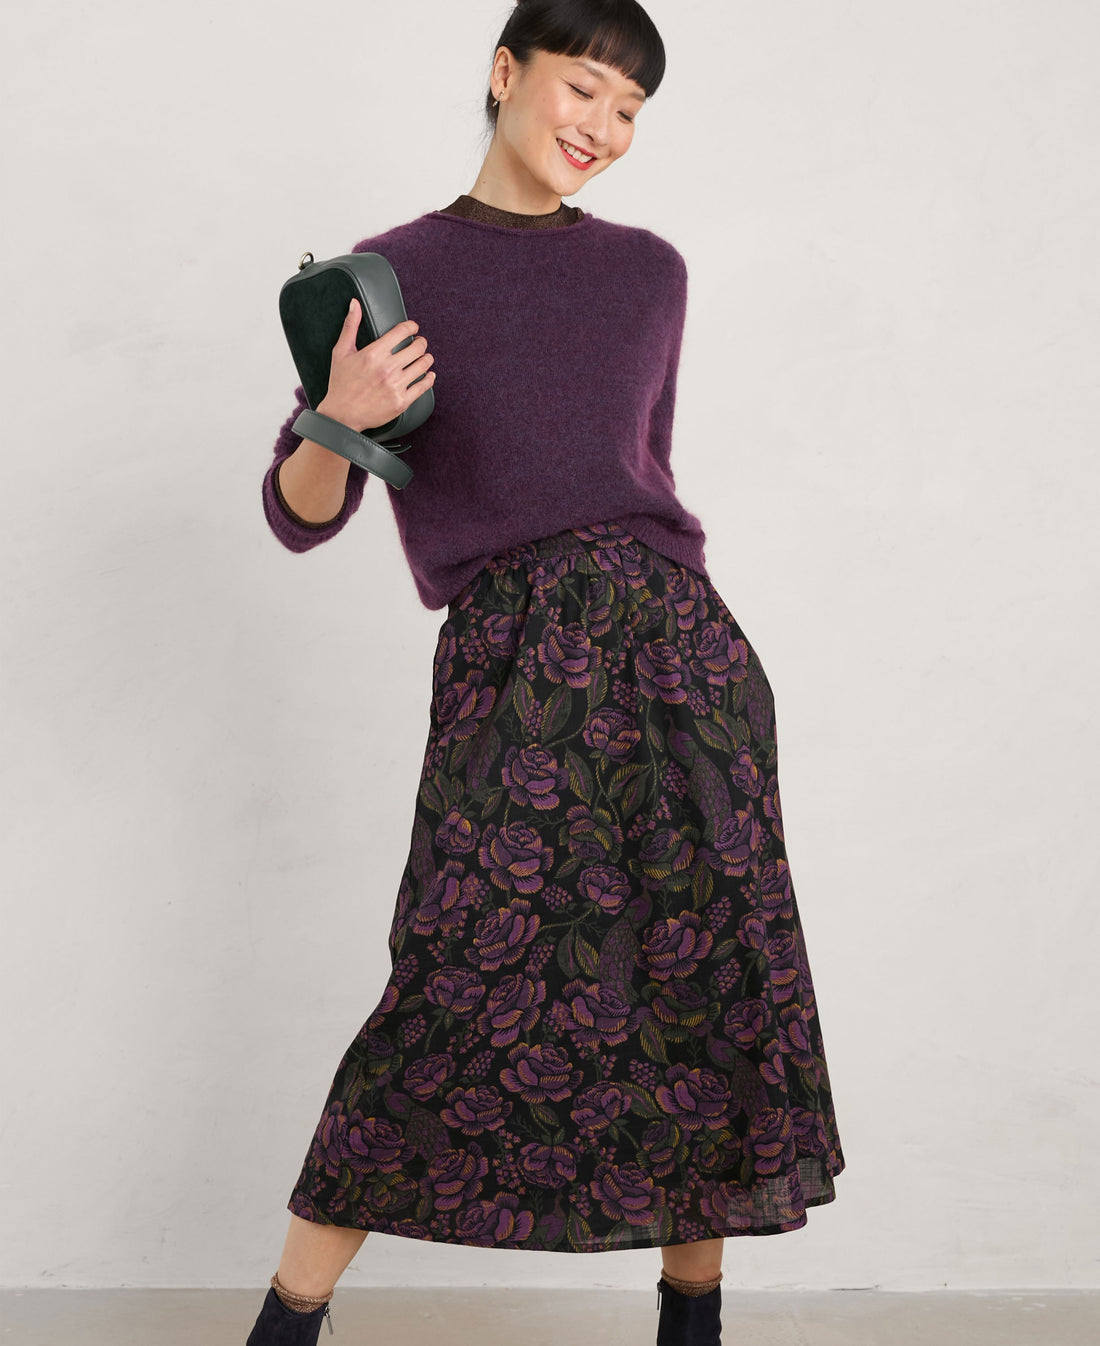 Tawny Owl Skirt - Tapestry Bloom Grape